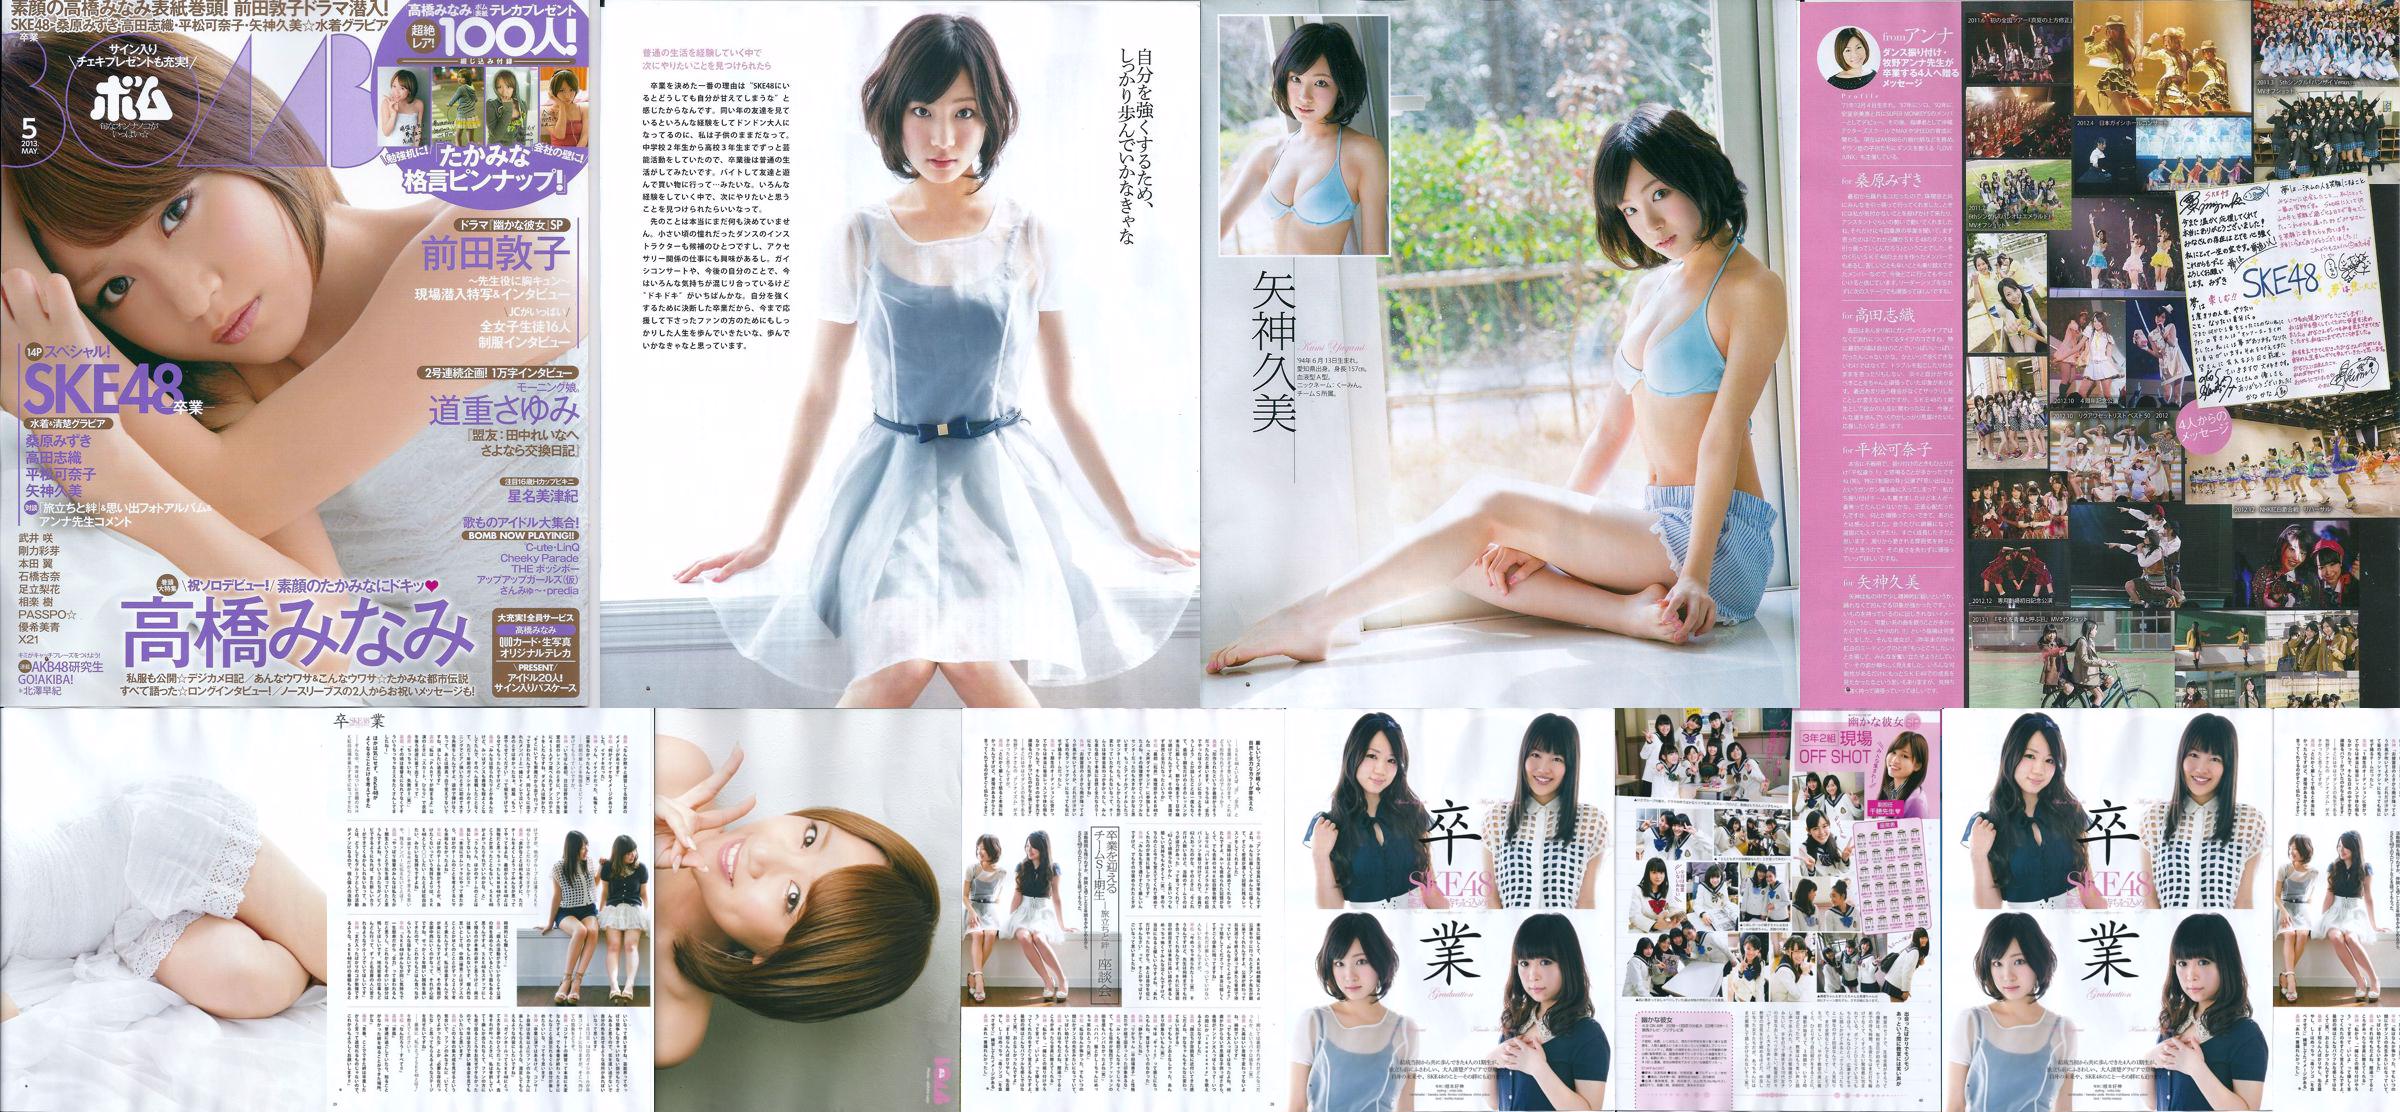 [Tạp chí bom] Số 05 năm 2013 Kumi Yagami Minami Takahashi Atsuko Maeda Photo No.cdc6f3 Trang 3